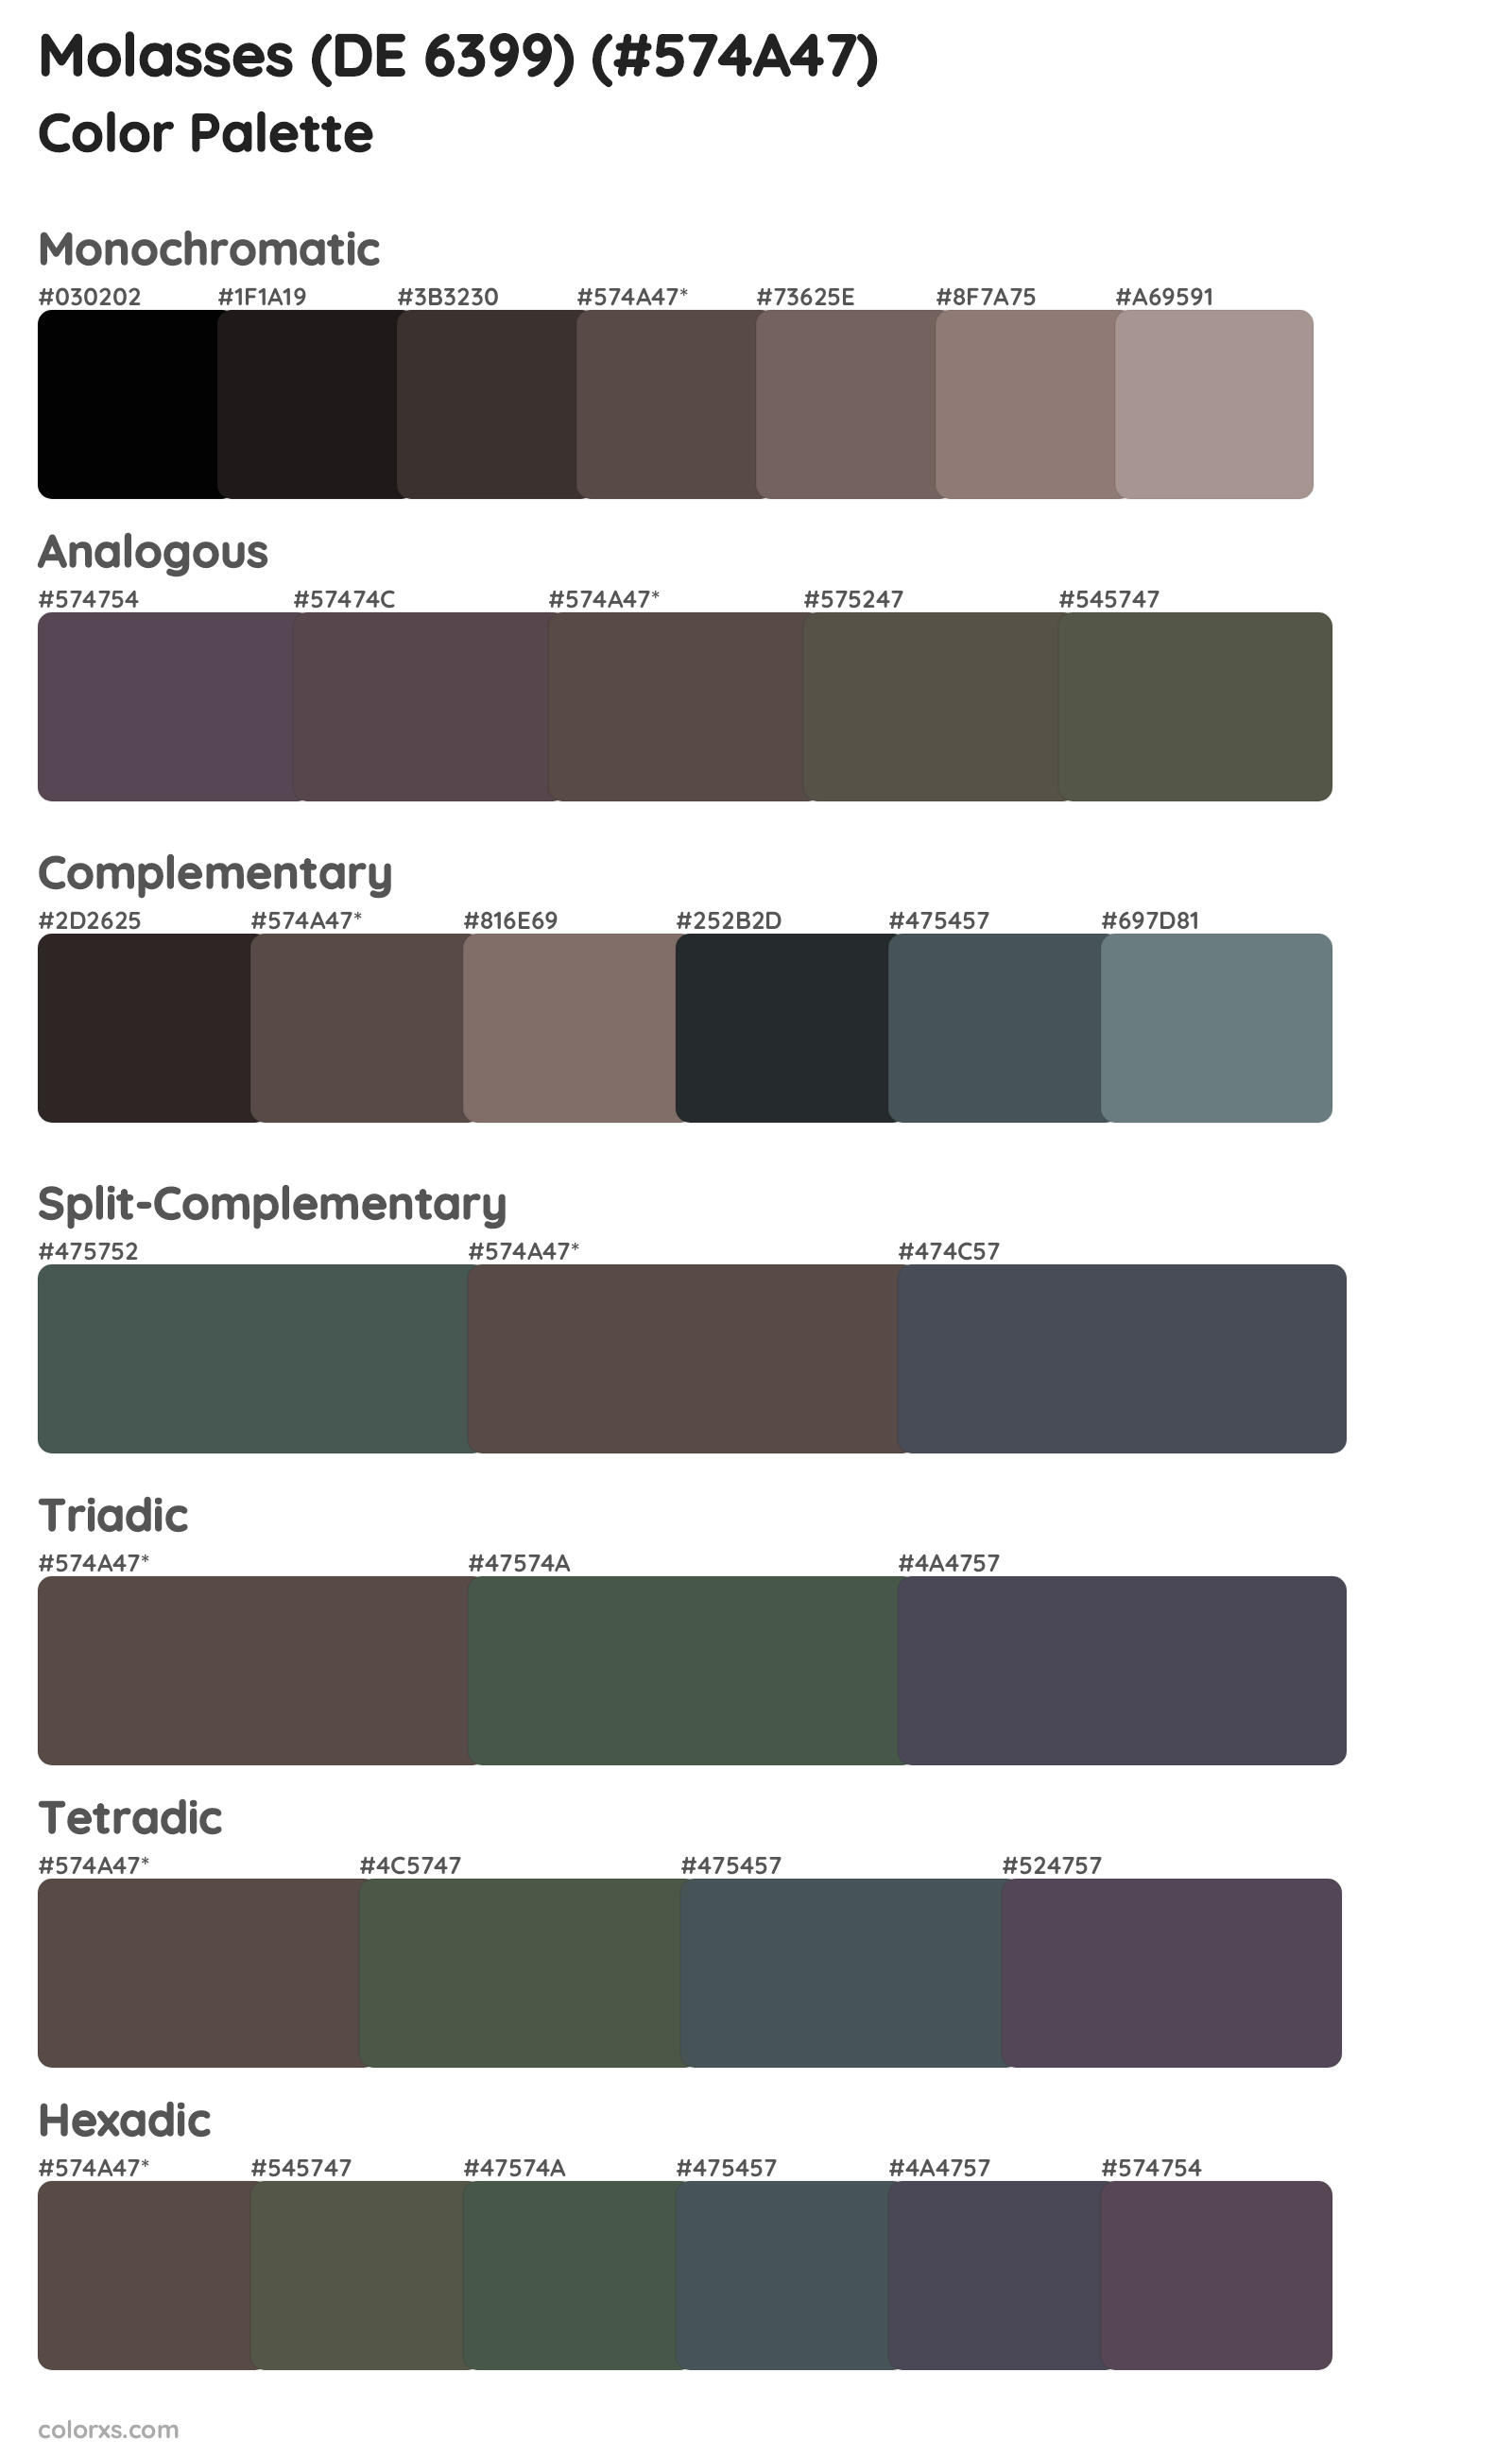 Molasses (DE 6399) Color Scheme Palettes